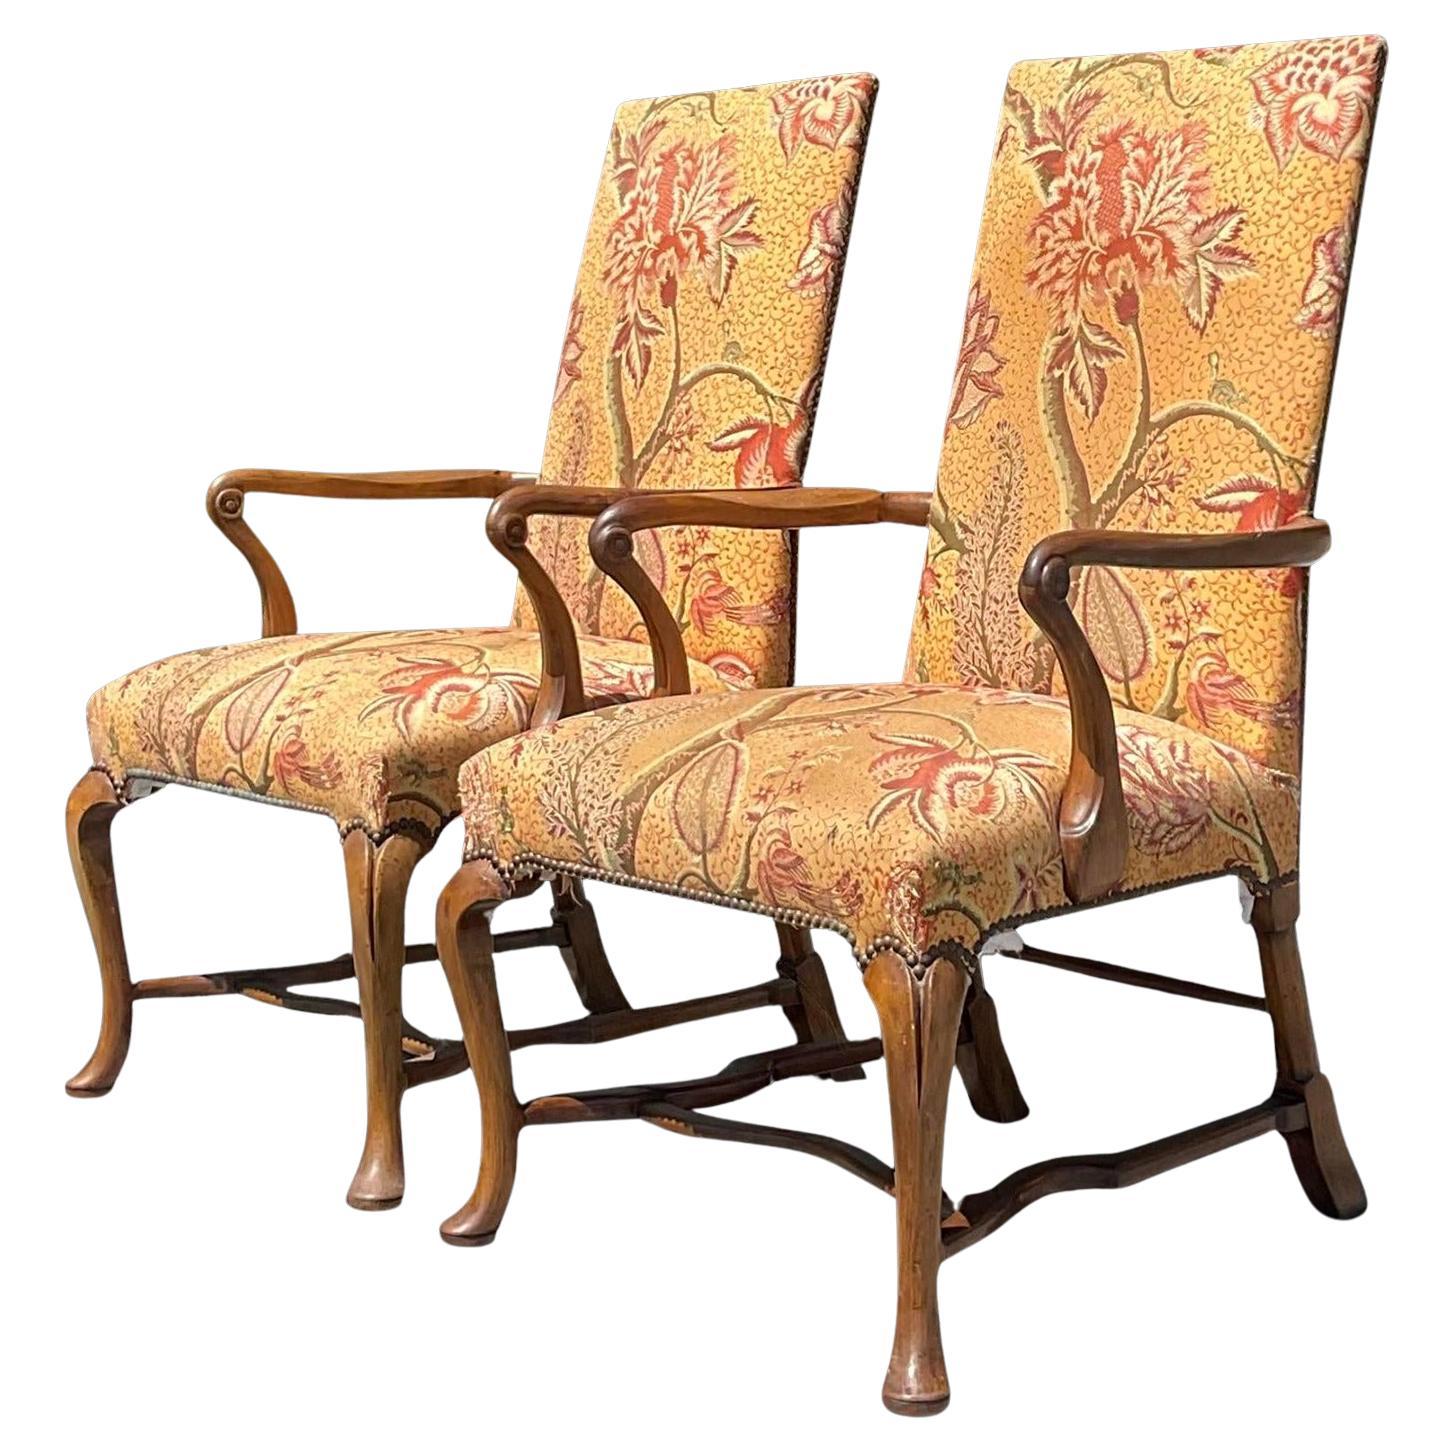 Vintage Regency Shepard’s Crook High Back Chairs - a Pair